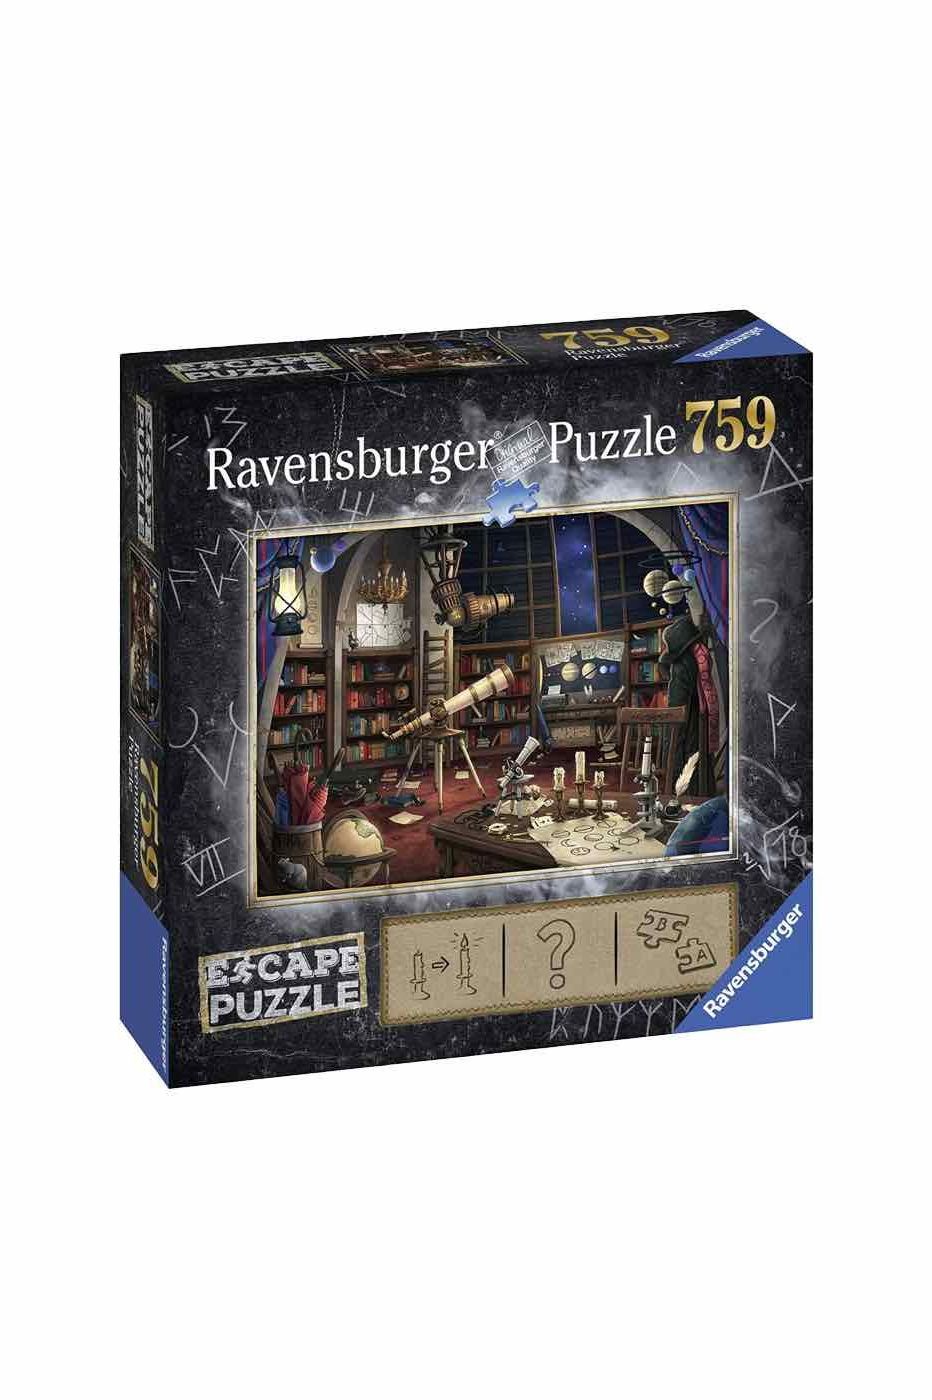 Ravensburger Escape Puzzle